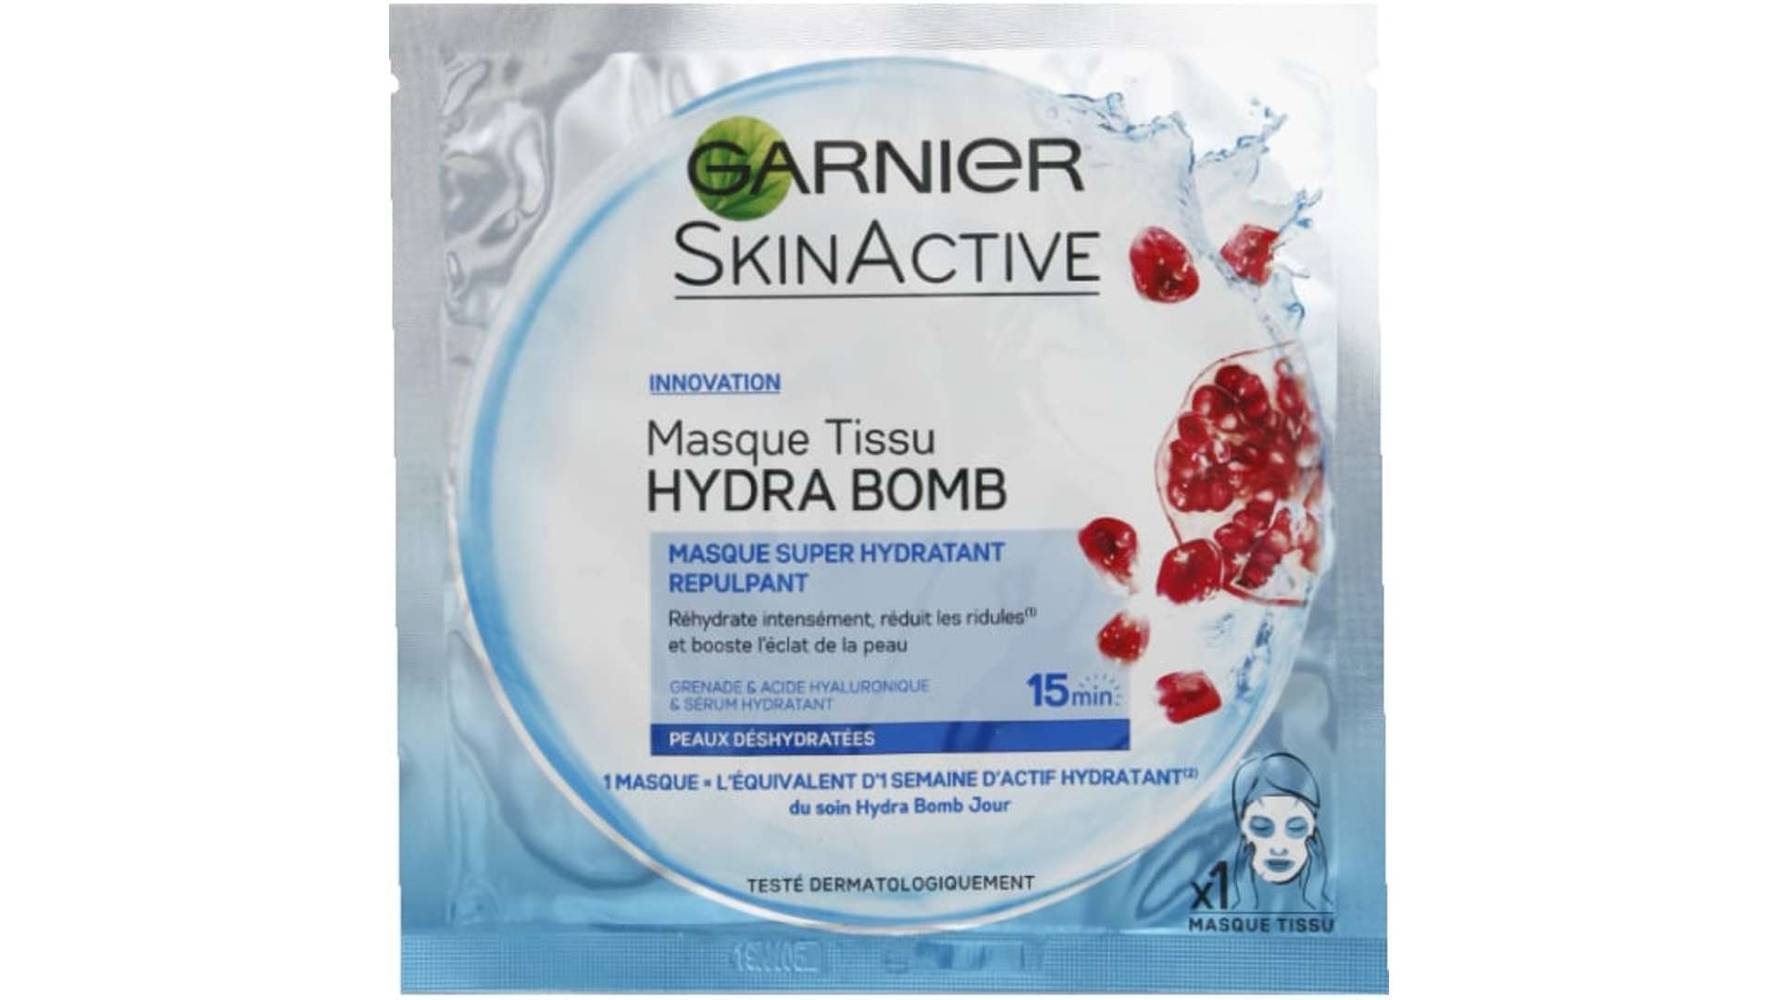 Garnier - Skin active hydra bomb masque tissu grenade